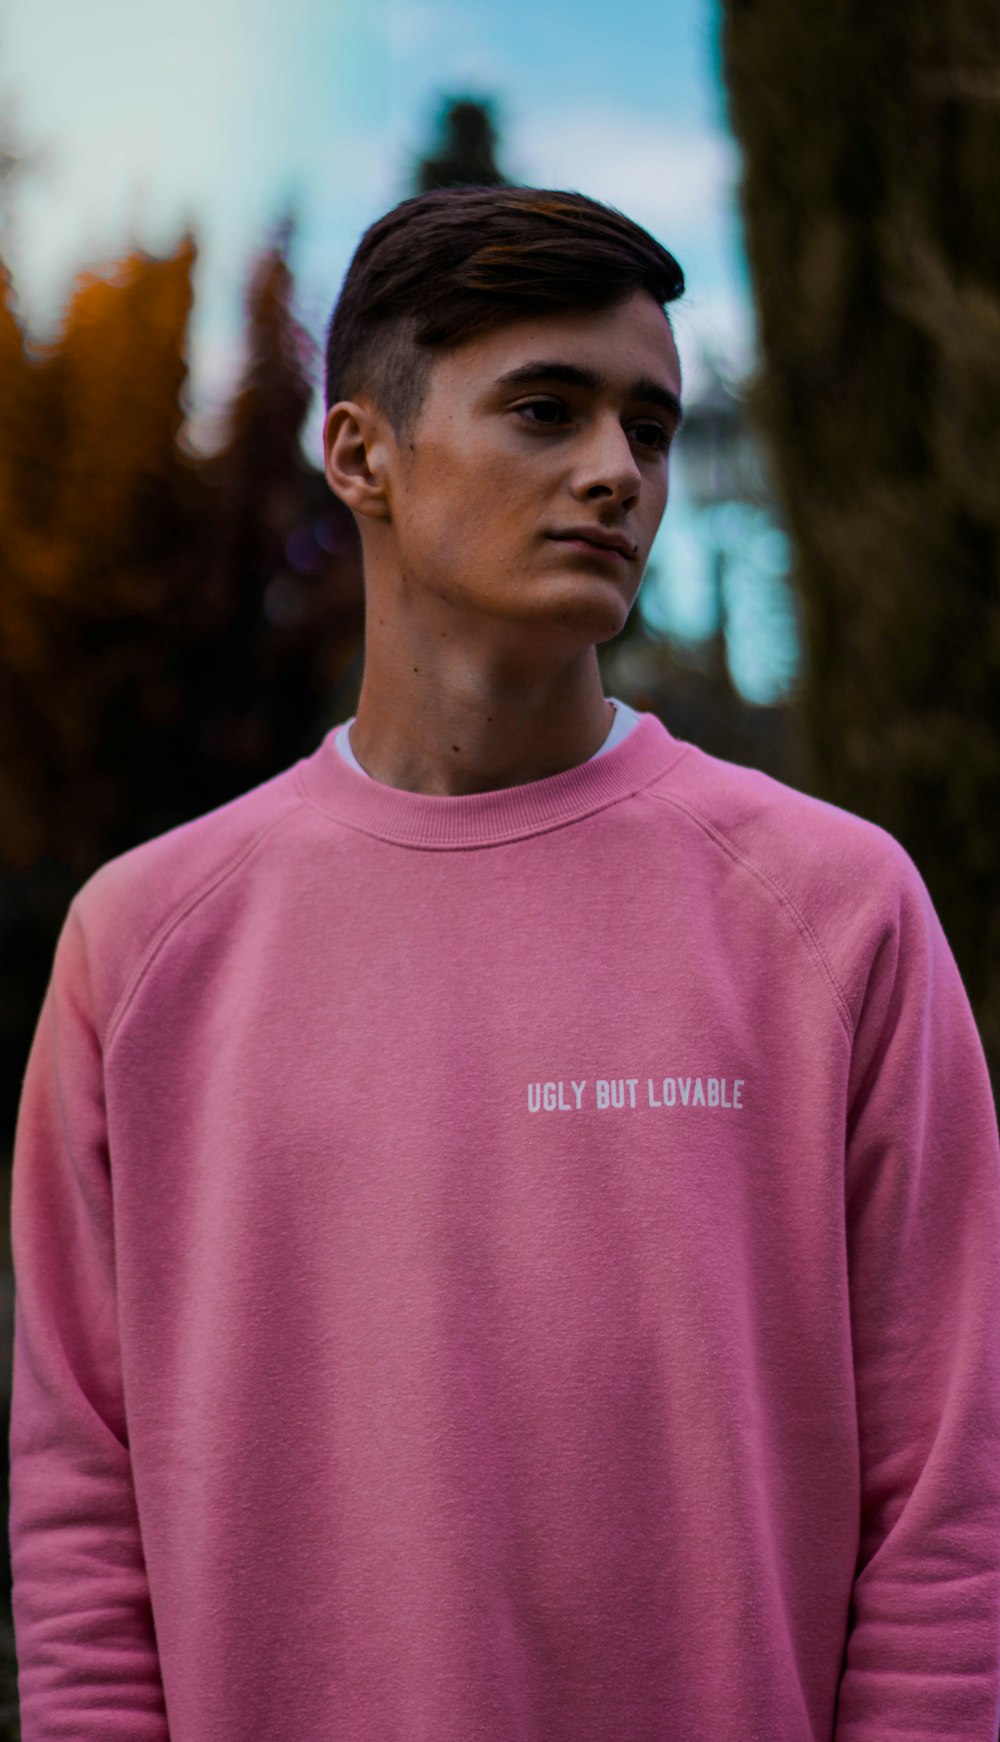 man wearing pink top